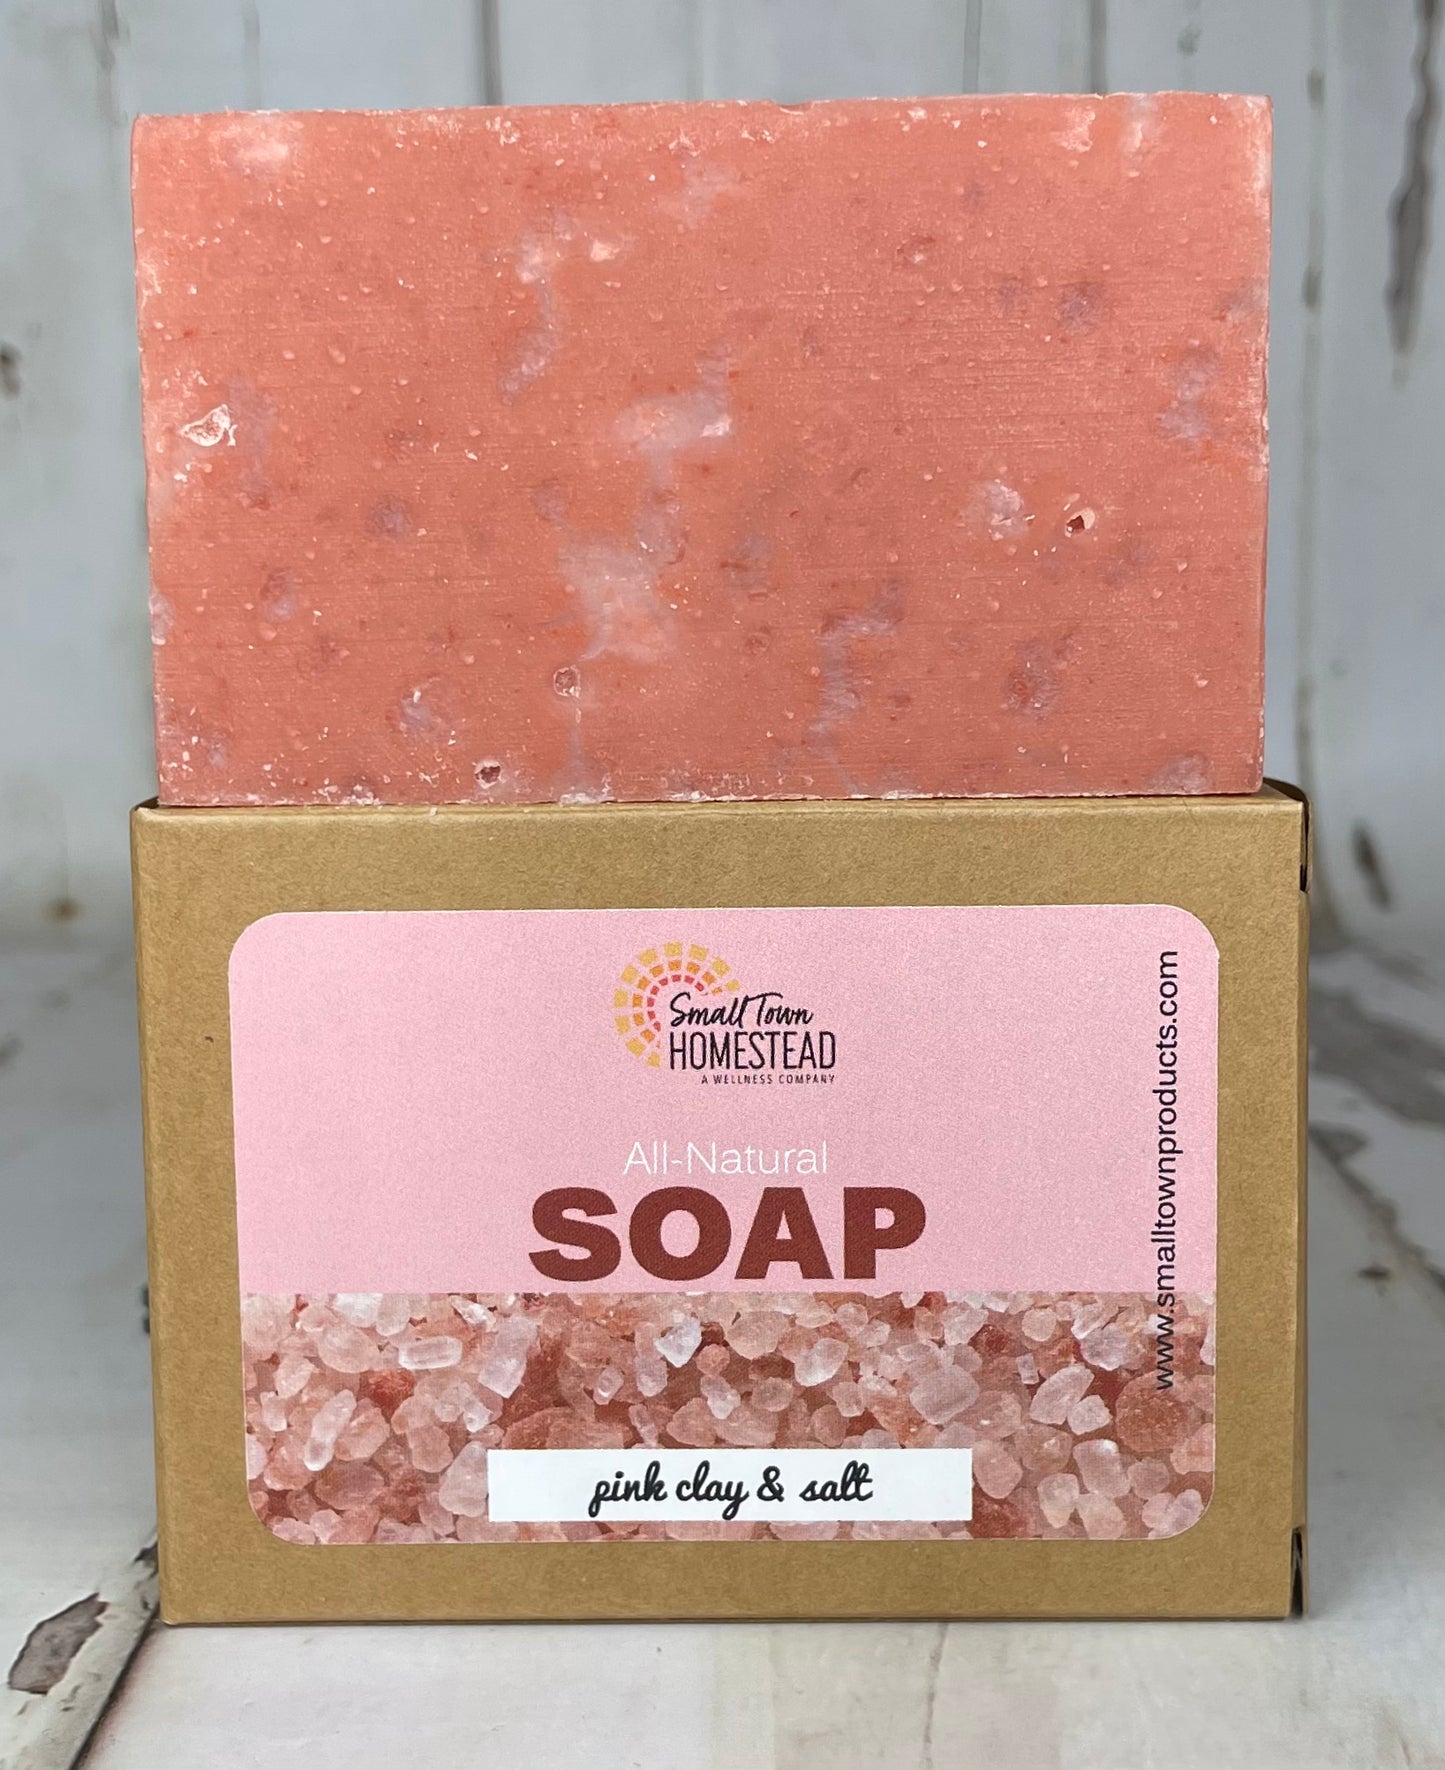 All-Natural Bar Soap